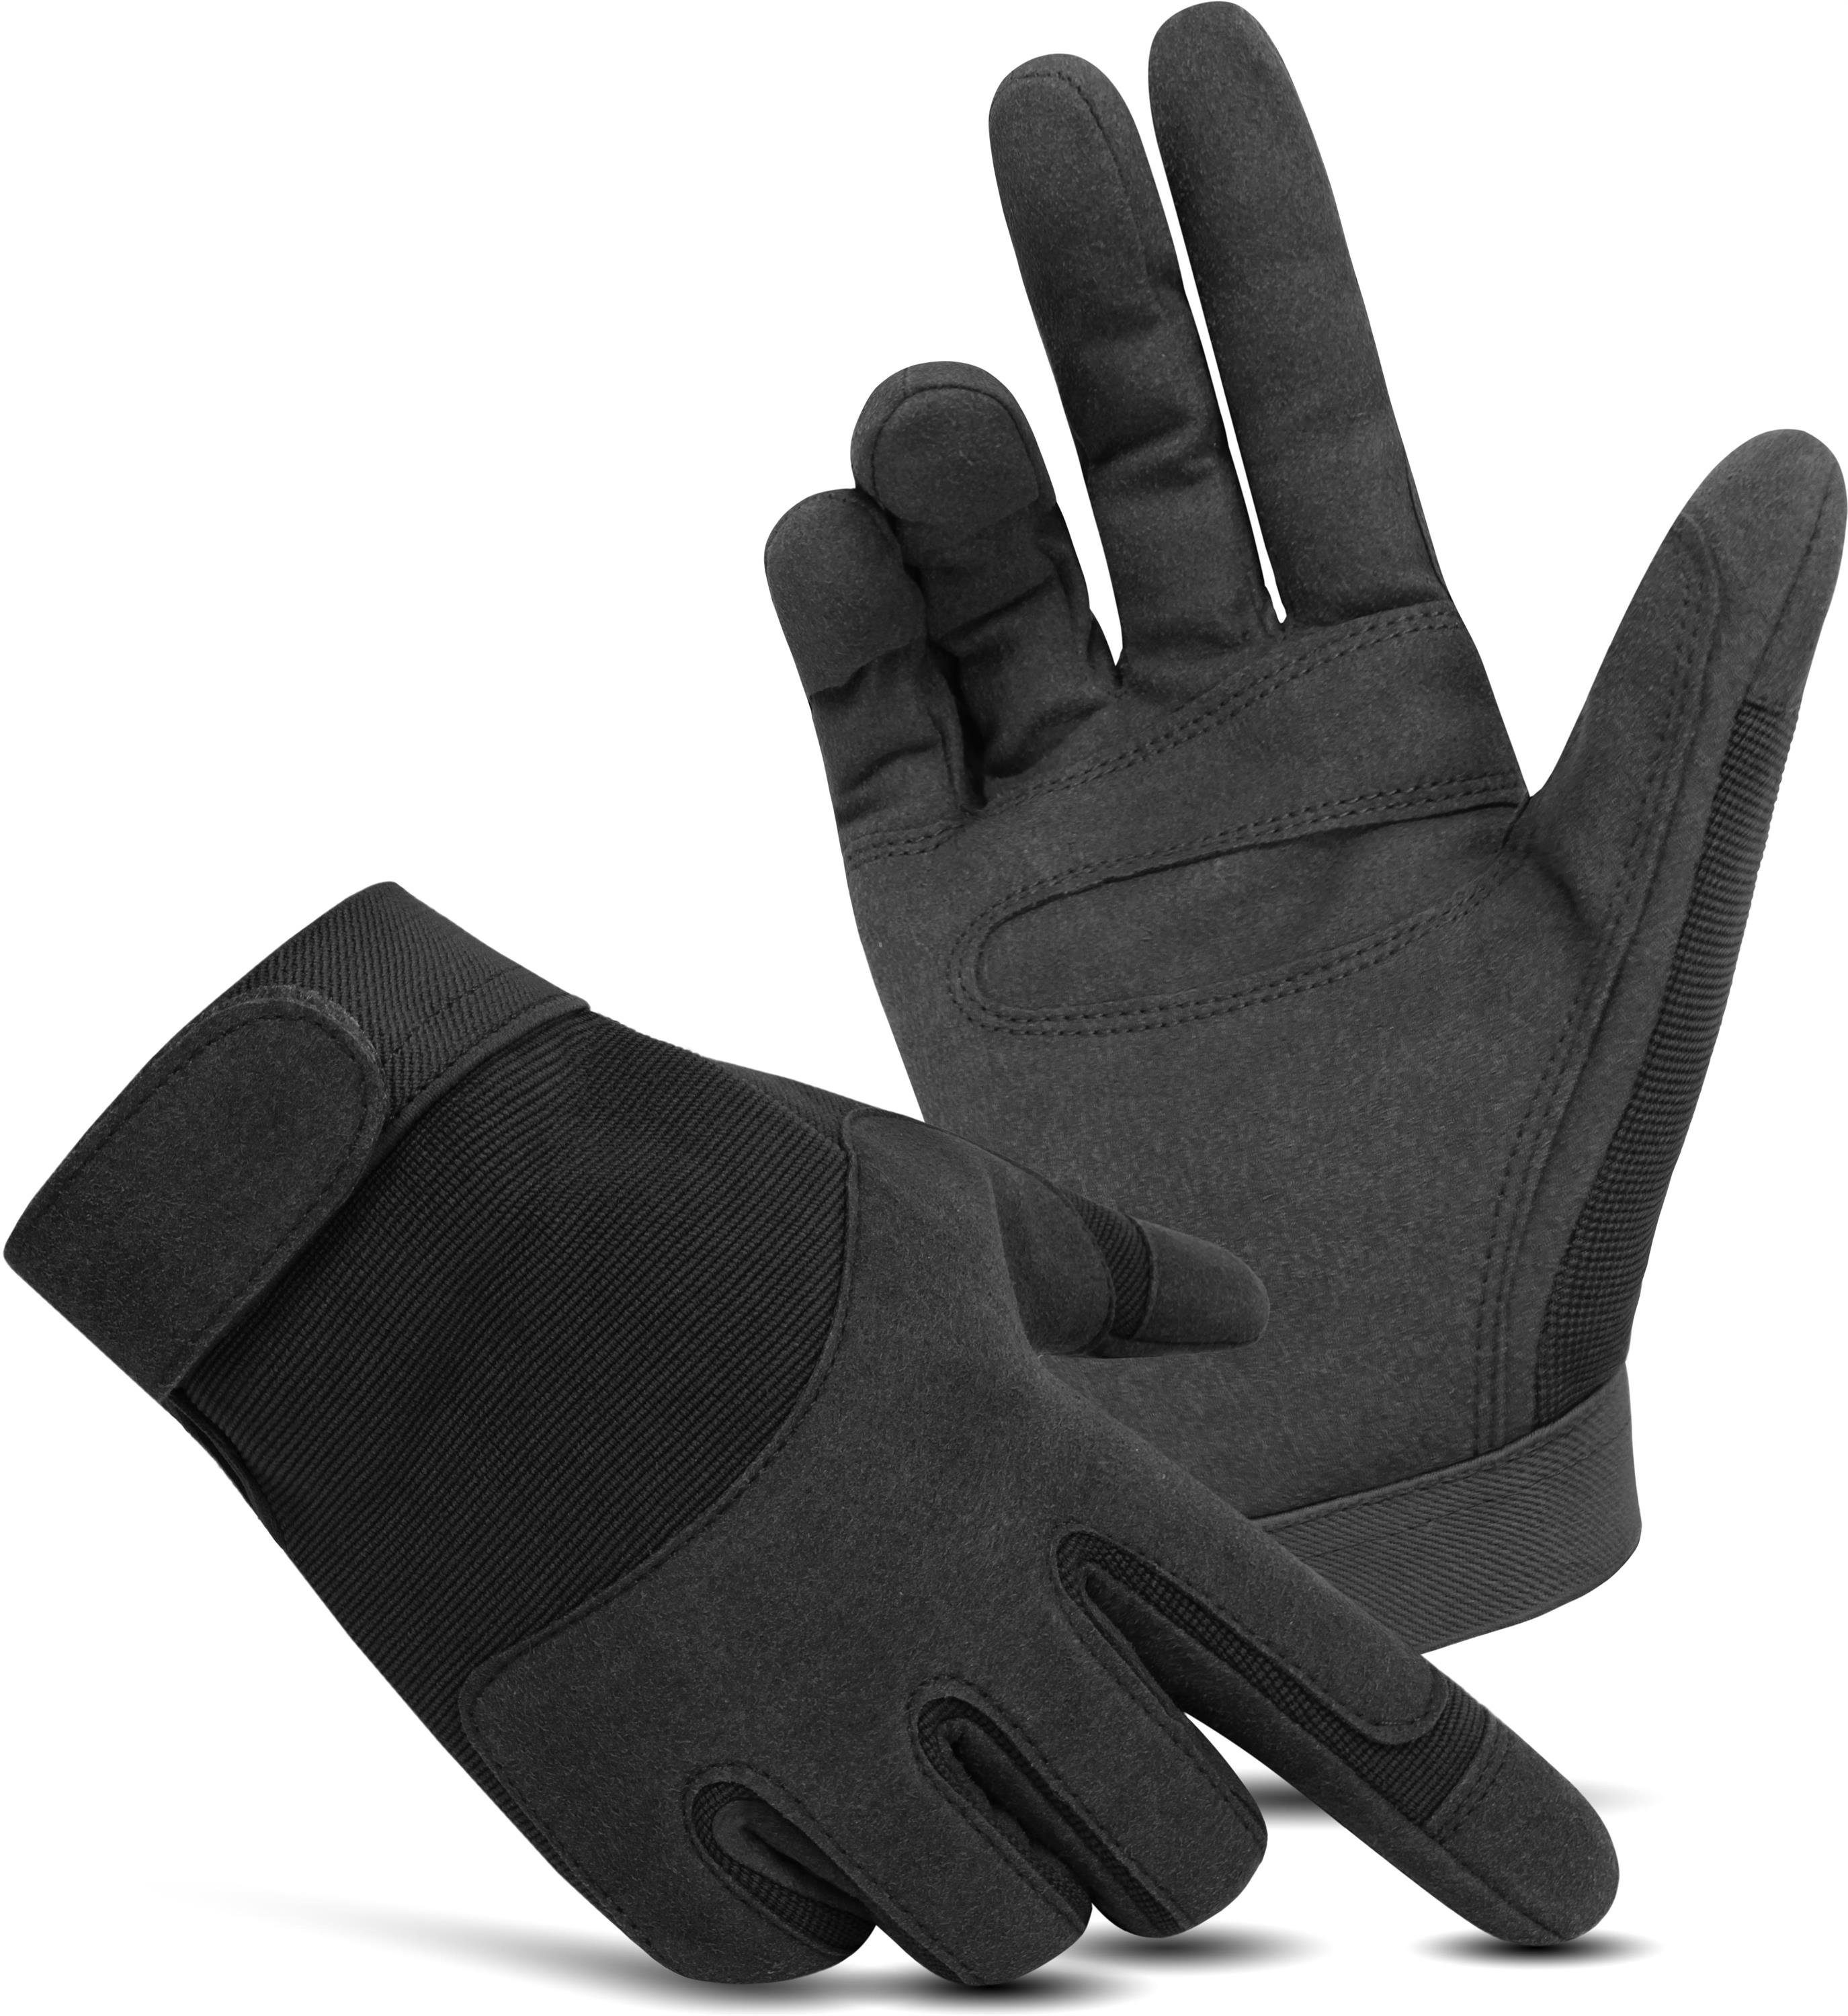 normani Multisporthandschuhe Fingerhandschuhe ARMY GLOVES Basic Tactical Handschuhe Einsatzhandschuhe Outdoorhandschuhe